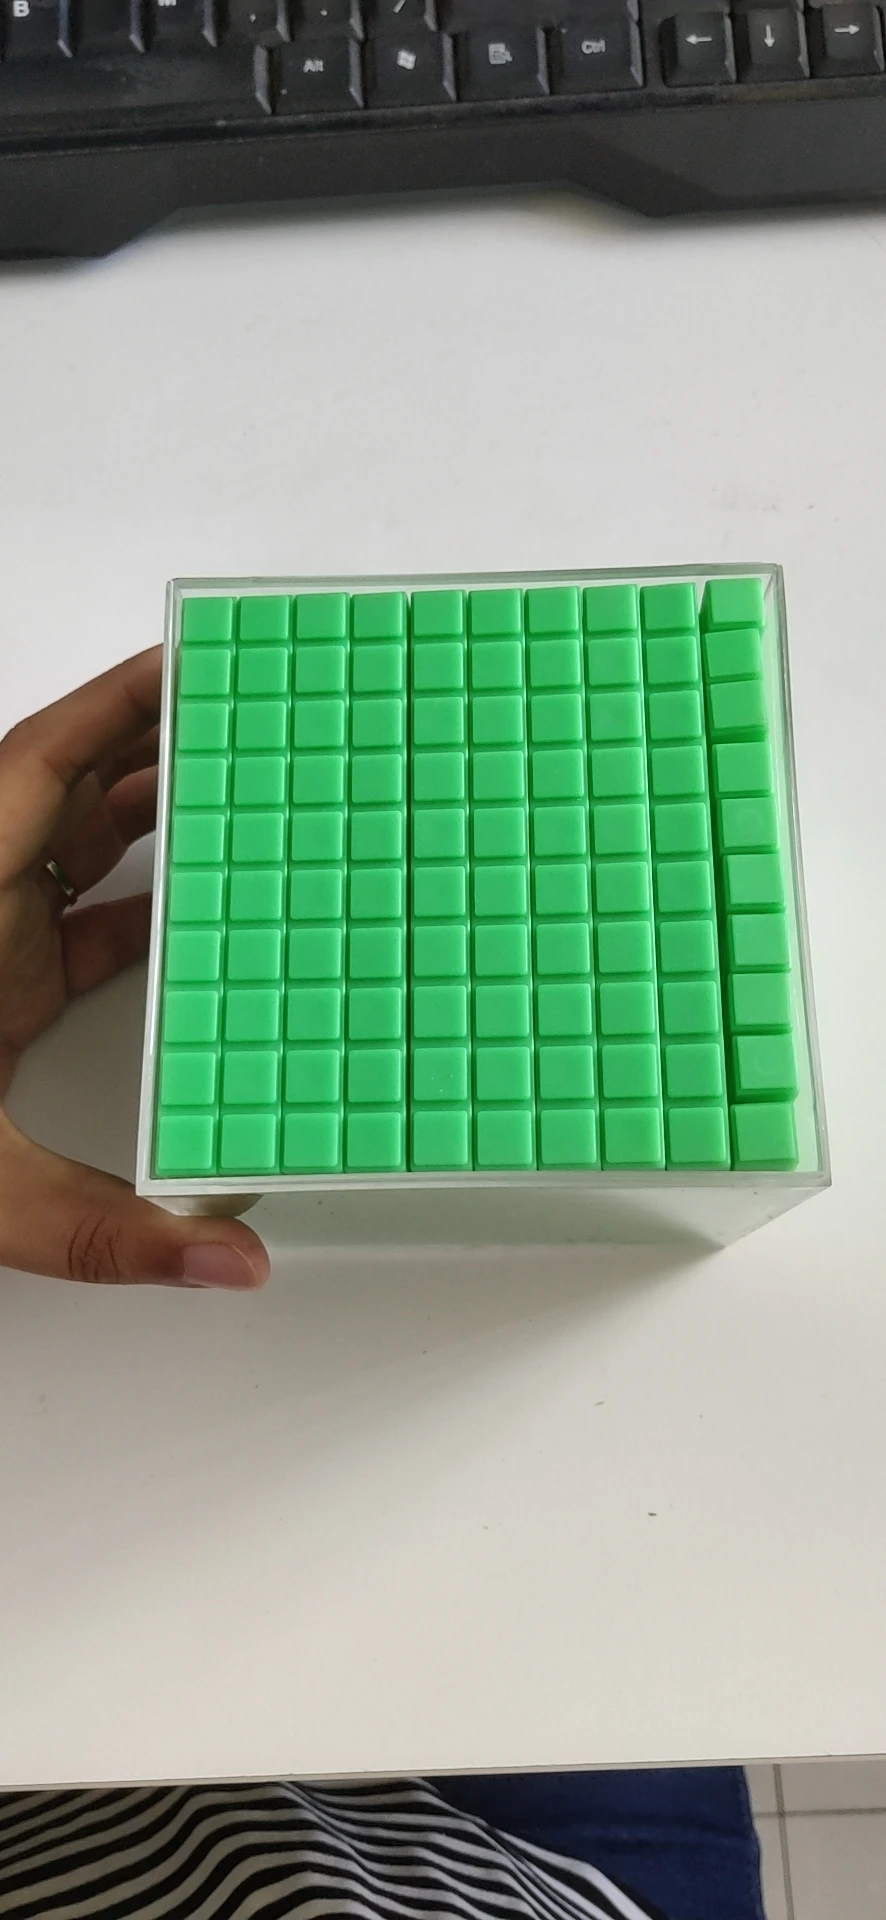 Понимание кубический куб демонстрационный блок реквизит кубический сантиметр Счетный блок Поверхностная площадь Расчет объема математические вспомогательные средства